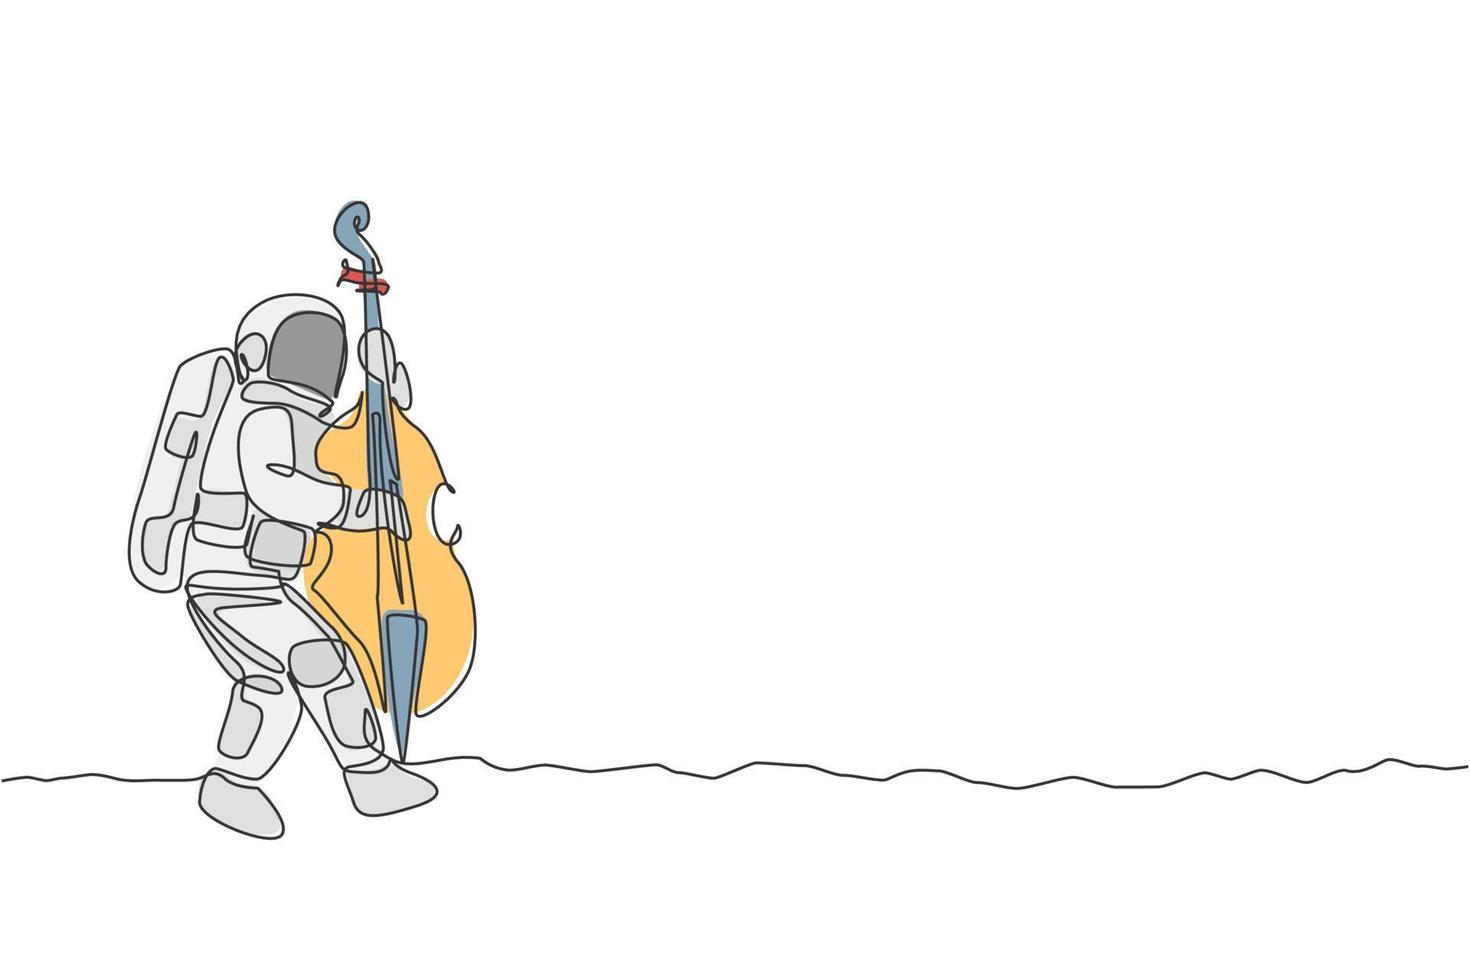 desenho de linha única contínua do violoncelista astronauta tocando instrumento musical de violoncelo na superfície da lua. conceito de concerto de música do espaço sideral. moderno desenho de uma linha desenho vetorial ilustração gráfica vetor